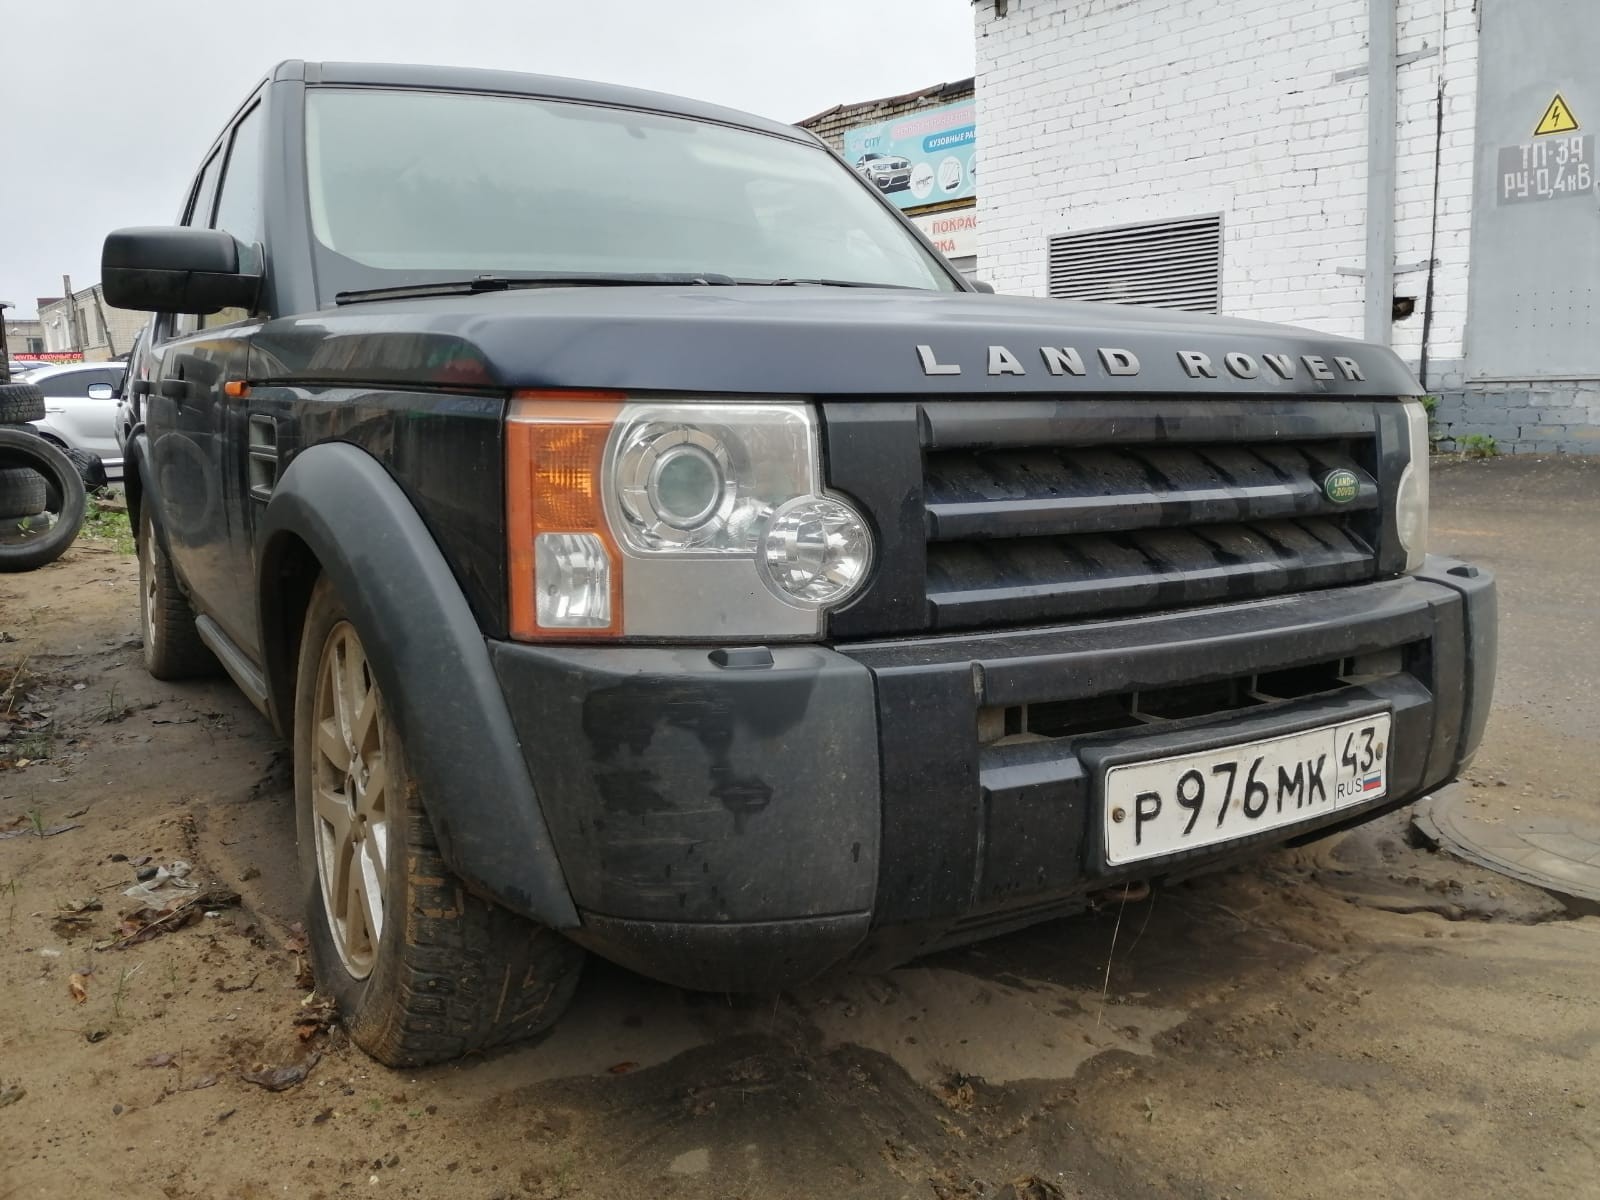 Лот № 12/1. Автомобиль Land Rover Discovery 3 легковой универсал 2008 года выпуска, государственный 